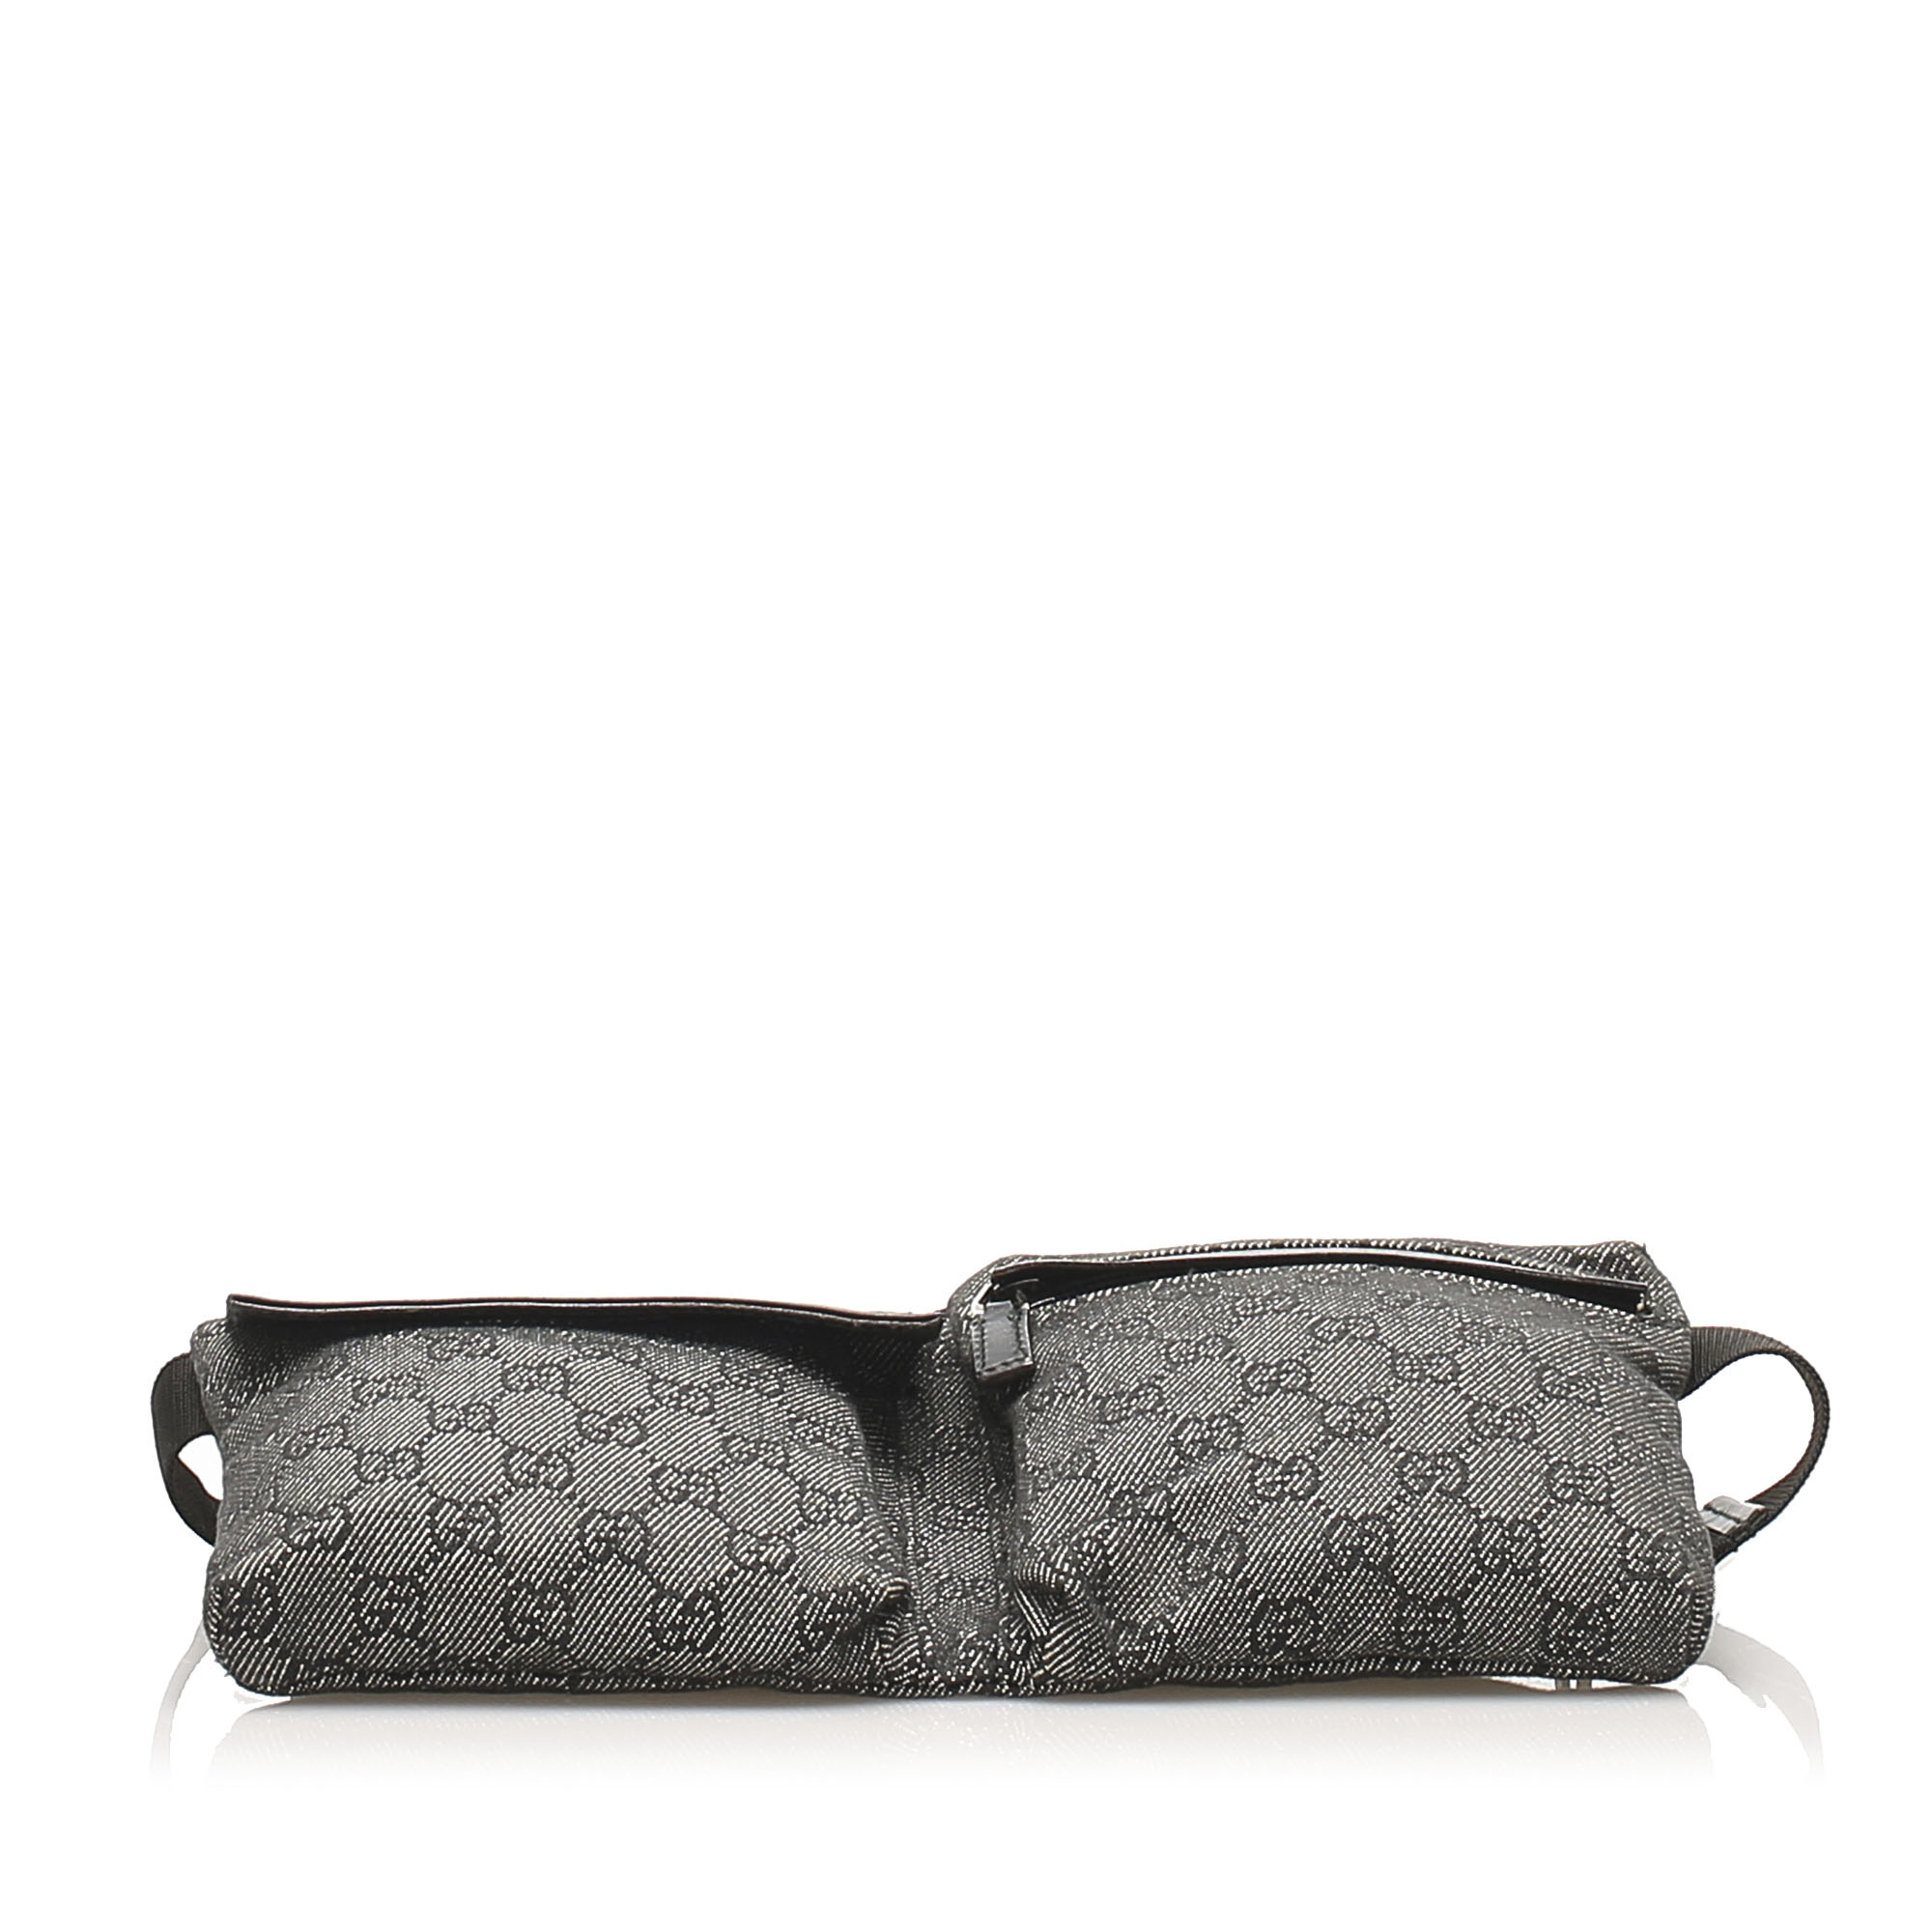 Gucci Canvas Belt Bag - Marmalade